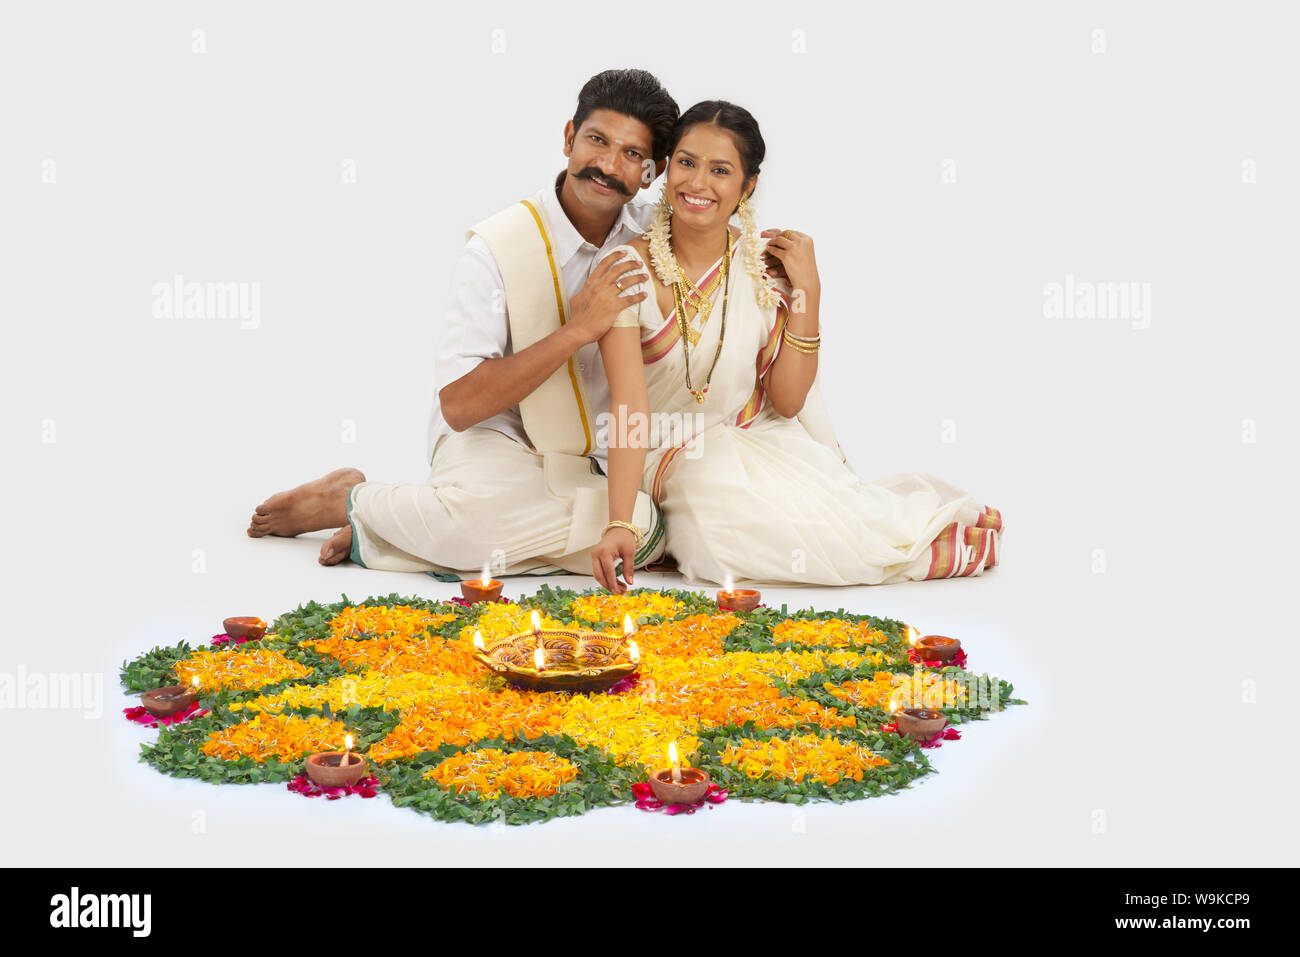 South Indian couple celebrating Diwali Stock Photo